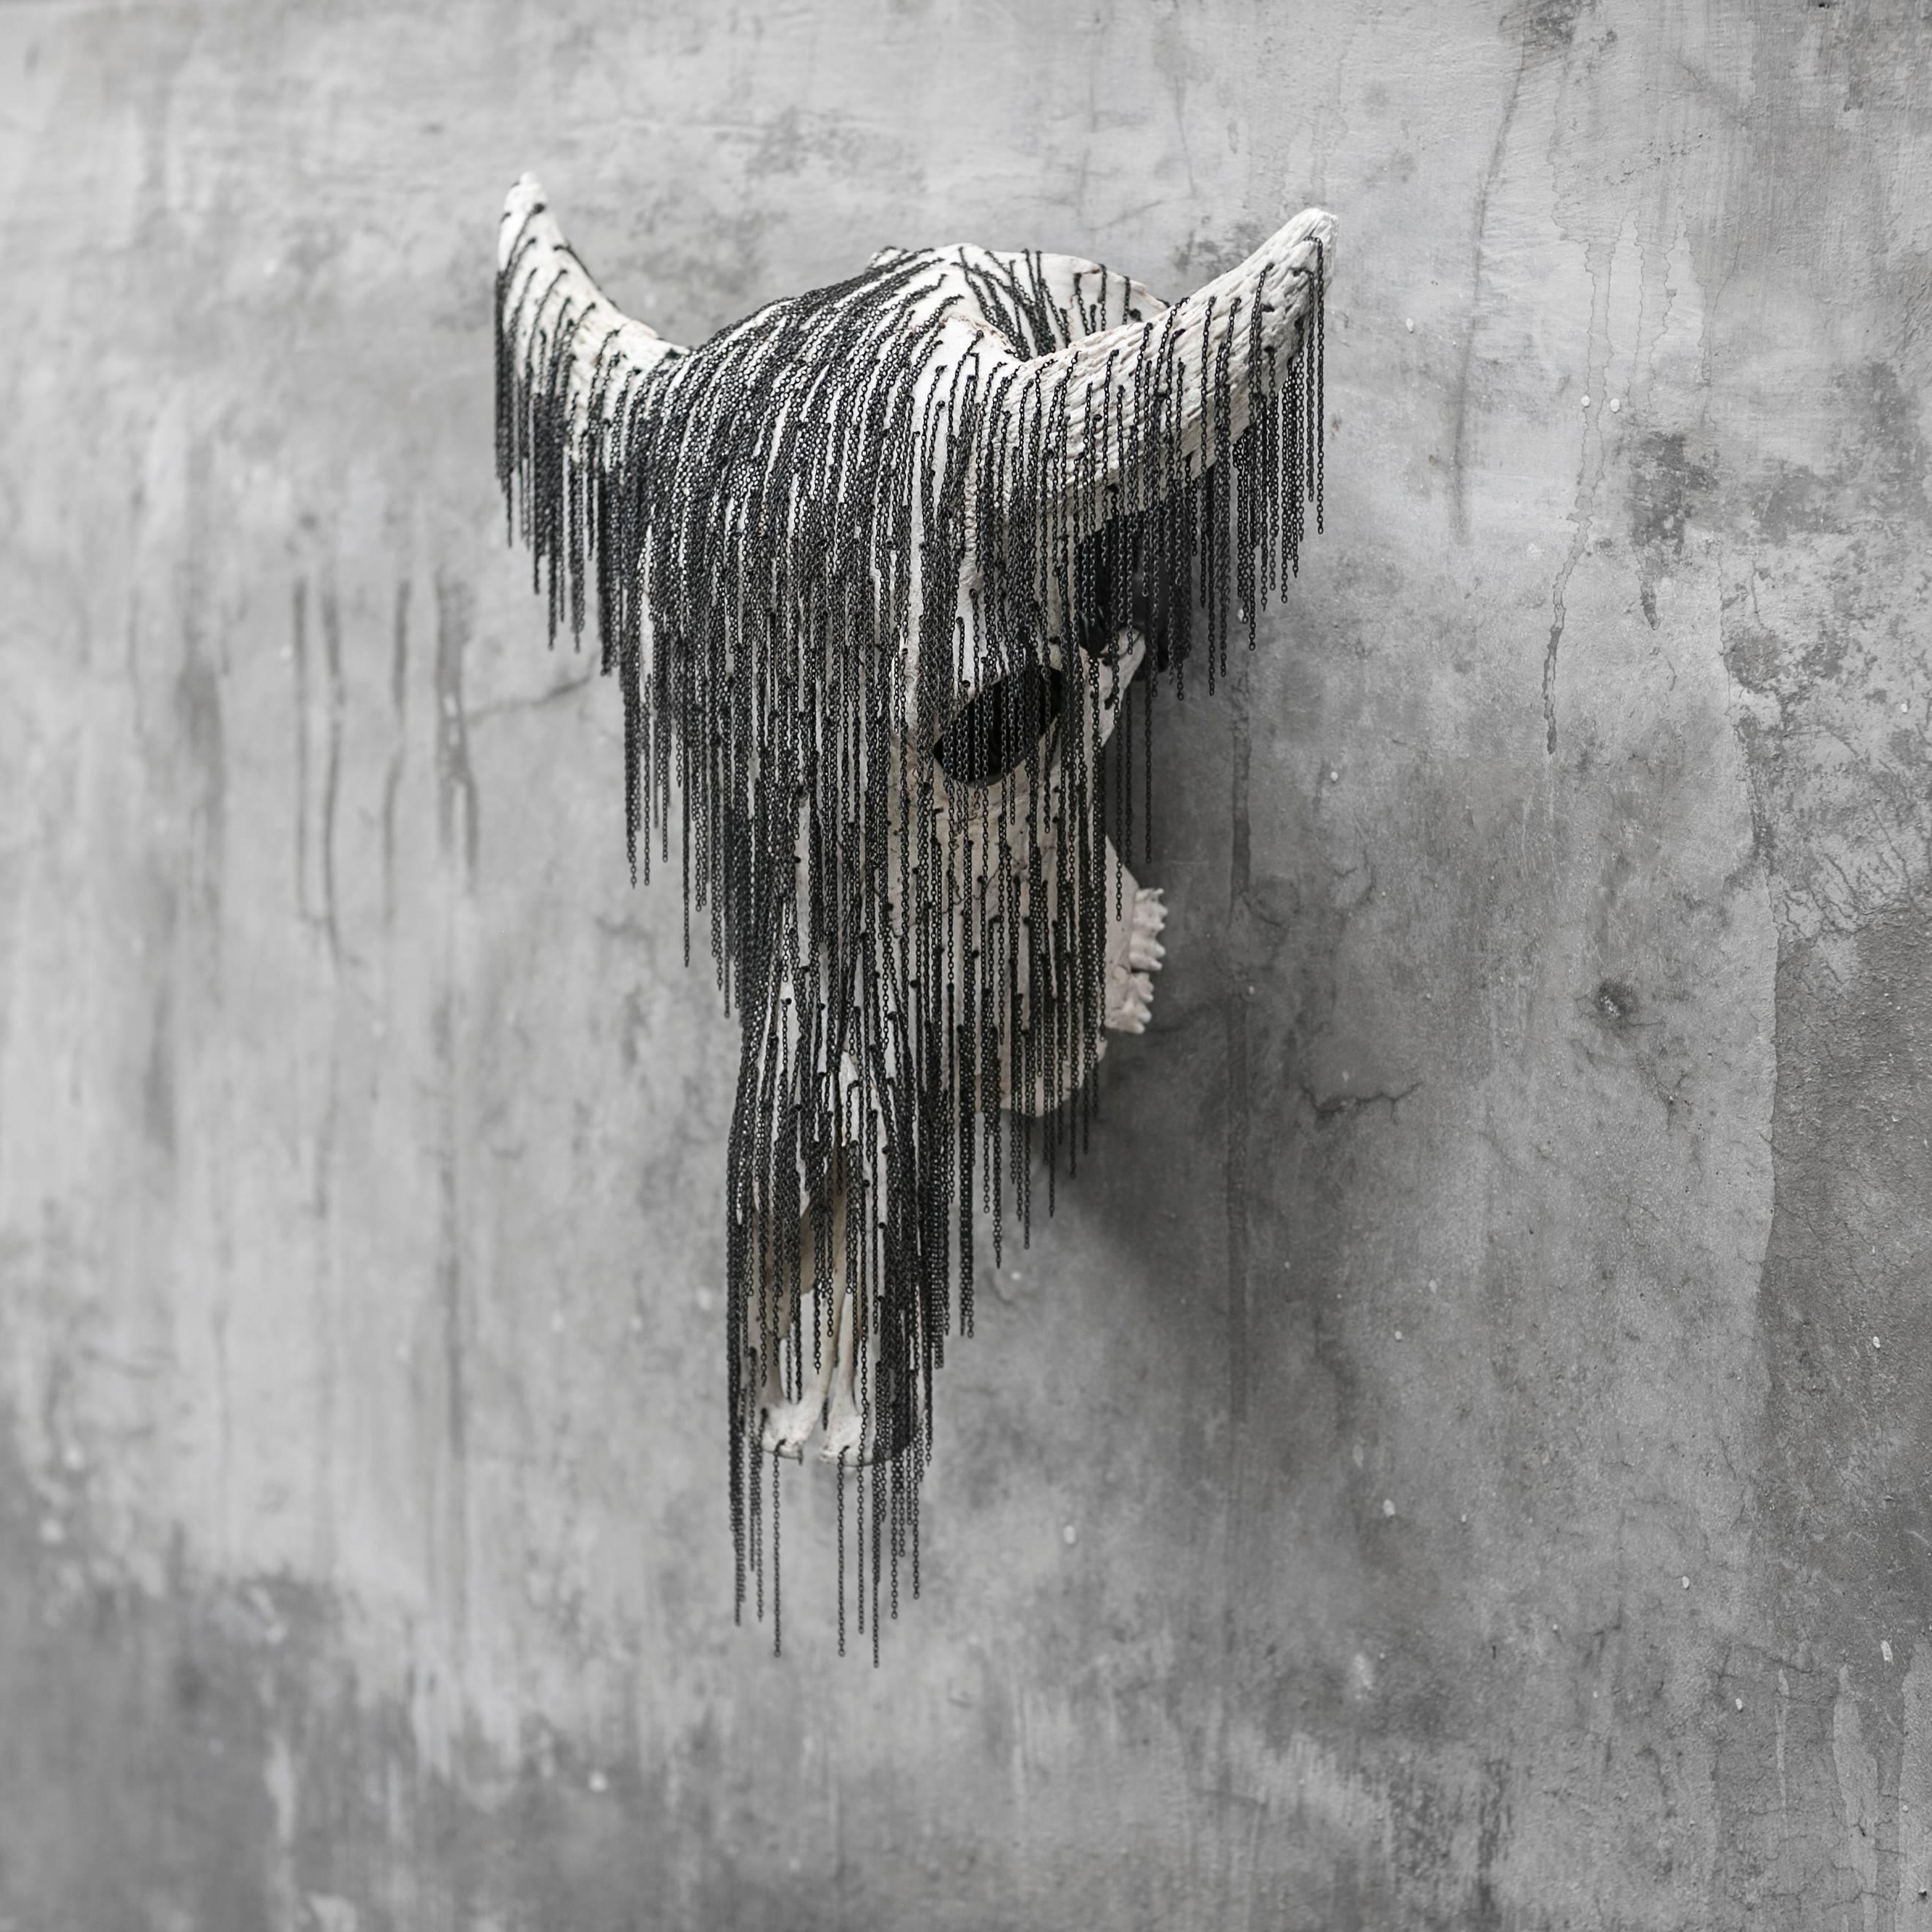 Topeng Kerbau - Sculpture by Spencer Hansen